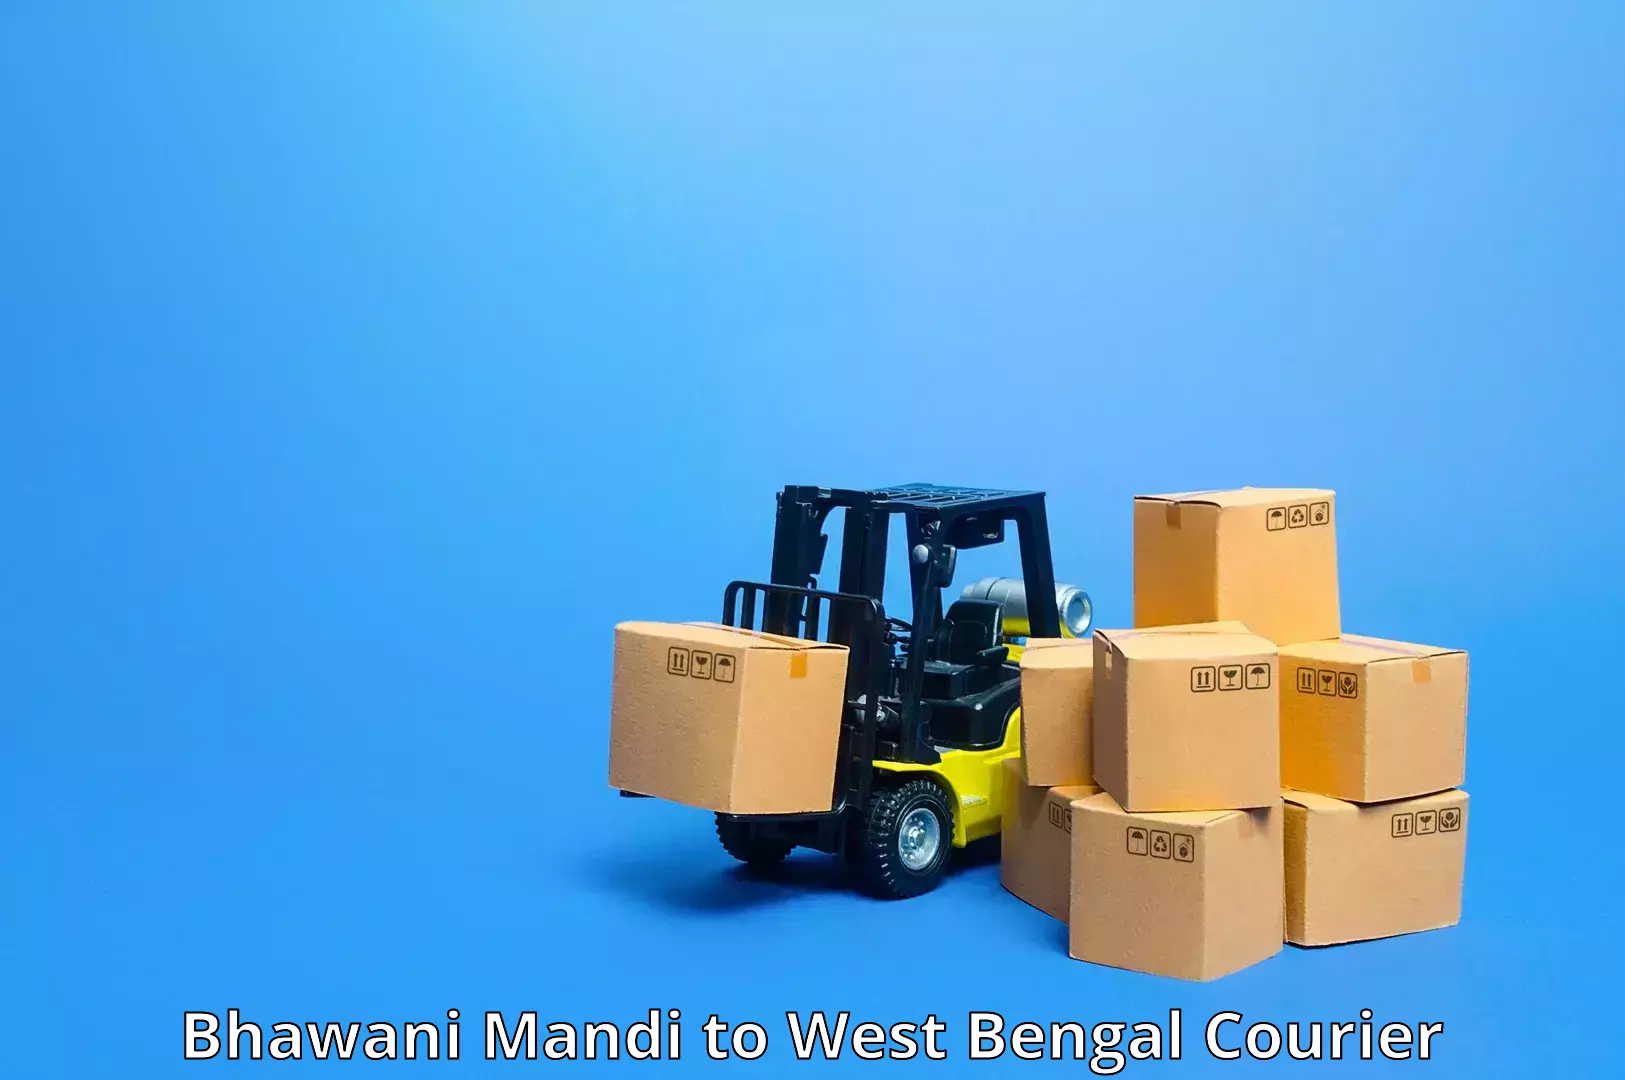 Cash on delivery service Bhawani Mandi to Kalyani